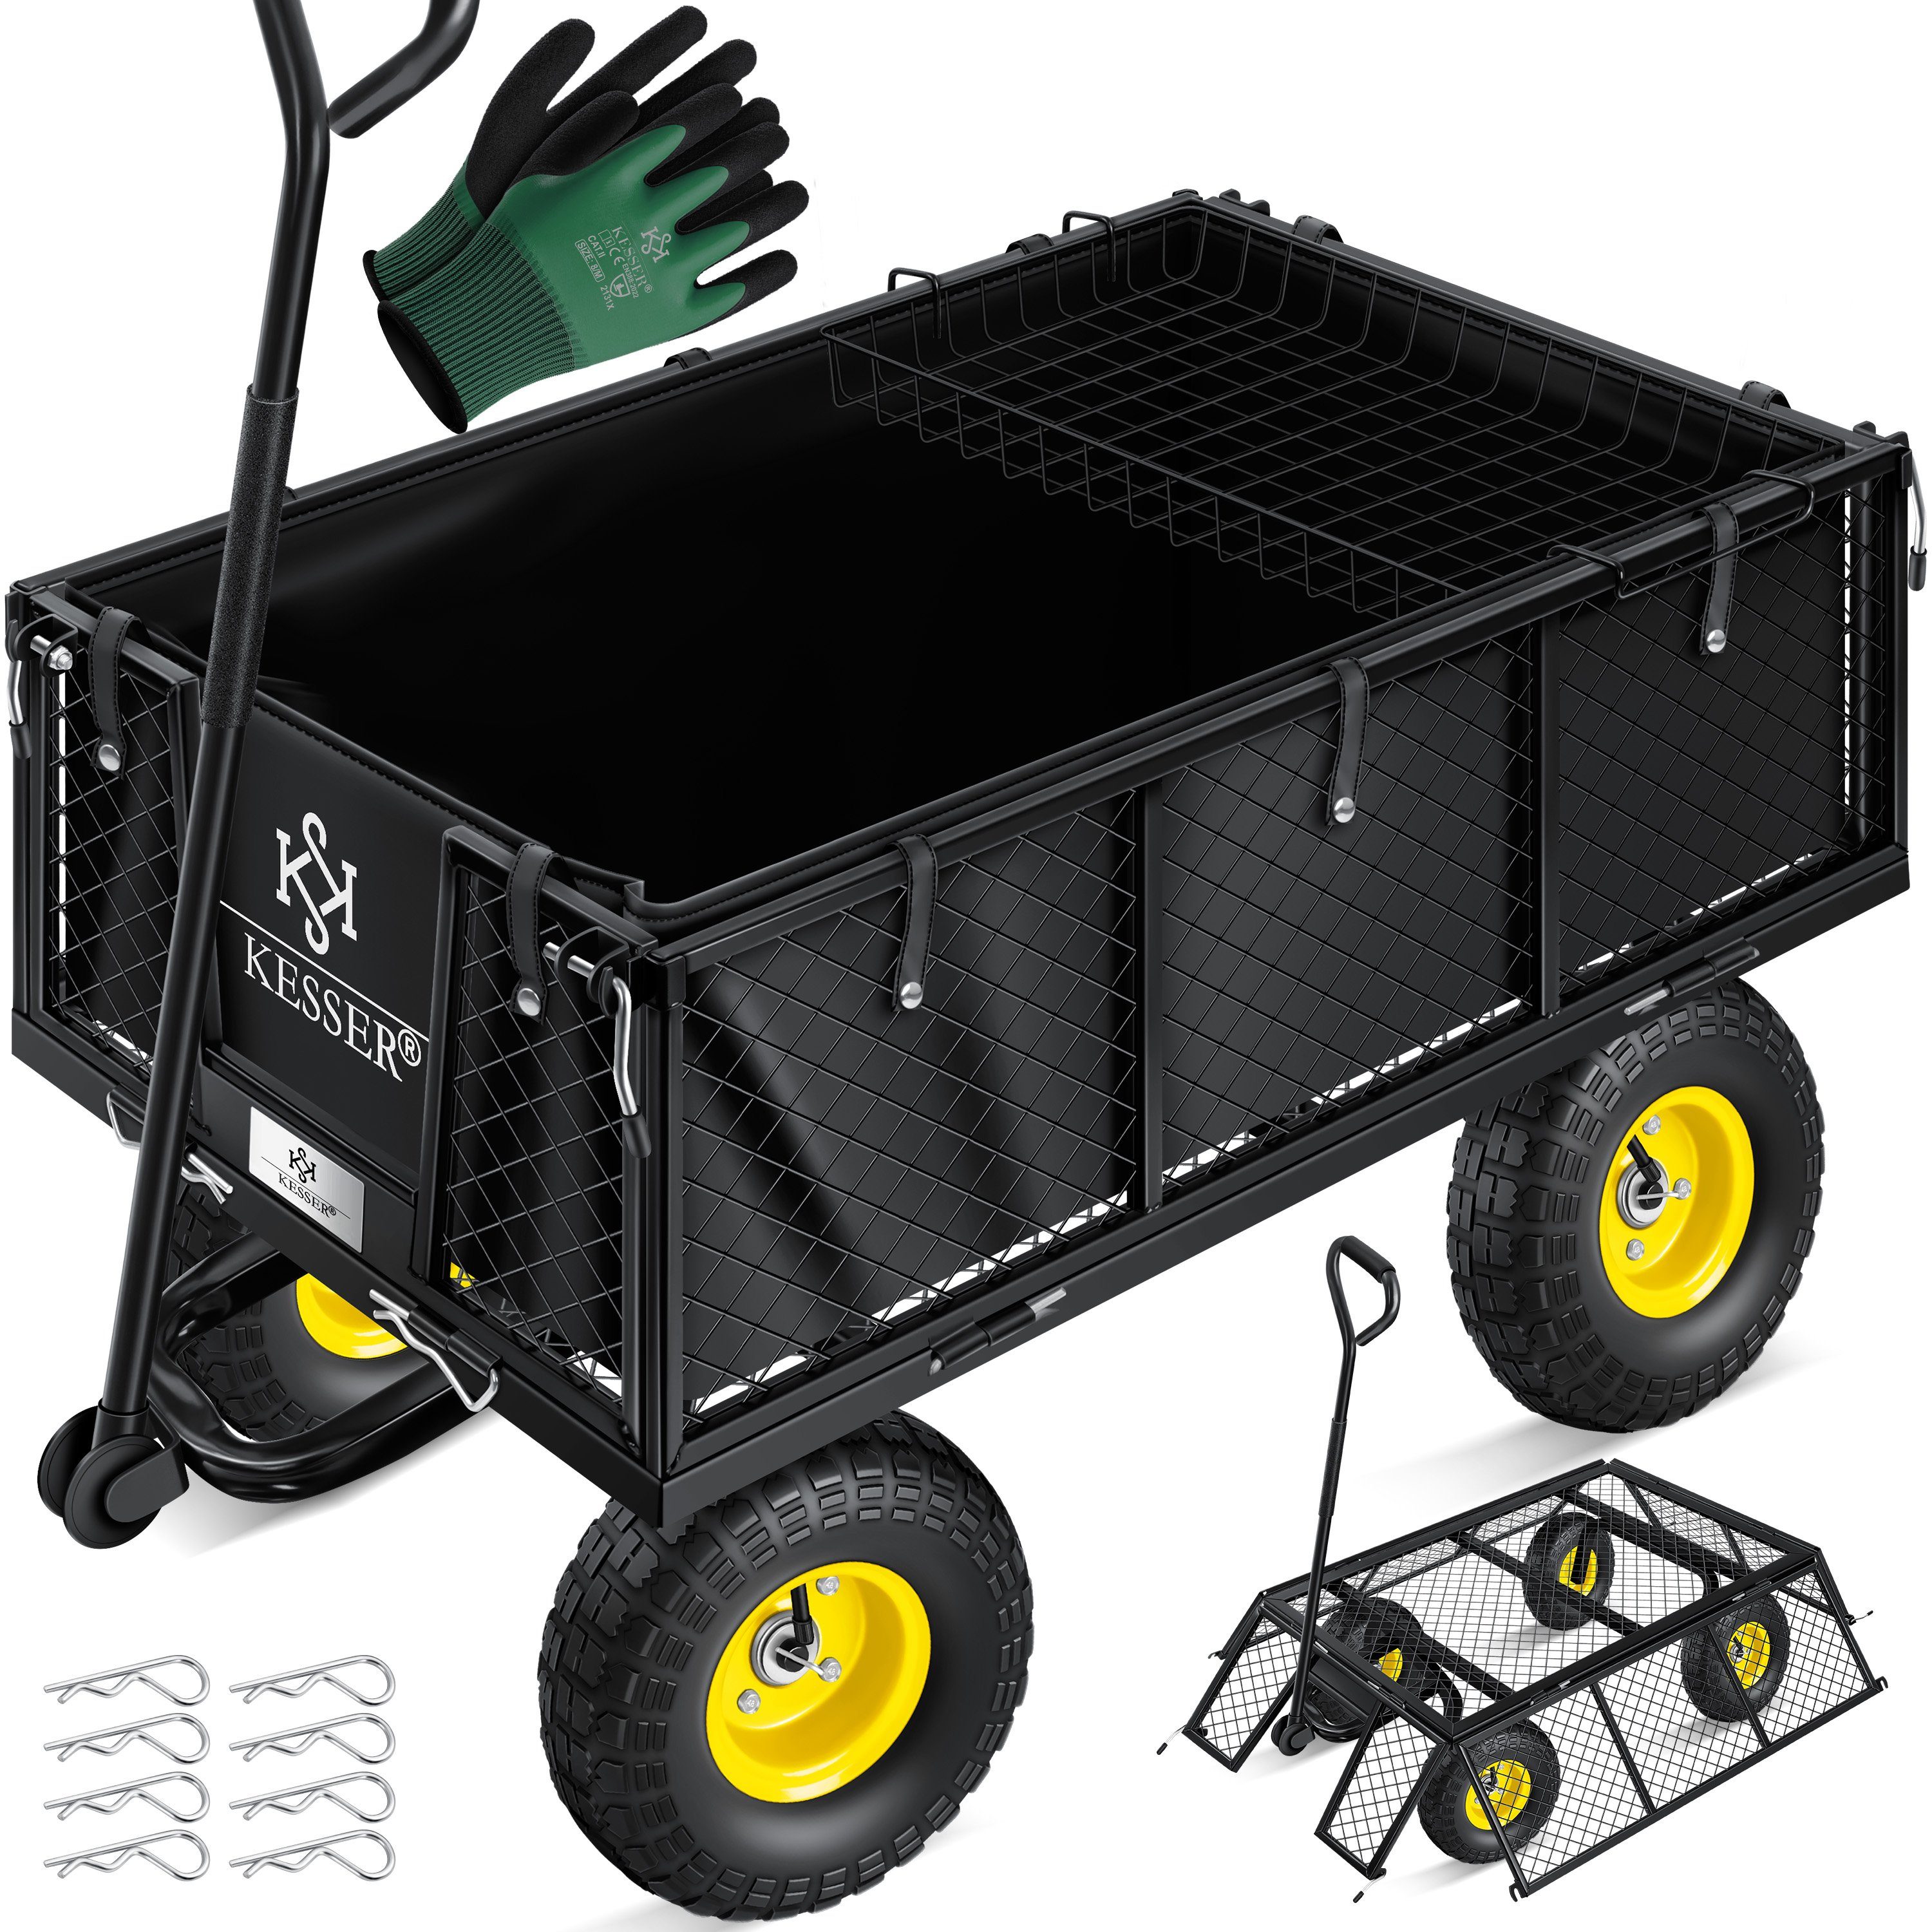 KESSER Bollerwagen, Gartenwagen Gerätewagen Transportwagen 700kg belastbar Gartenkarre schwarz | Bollerwagen